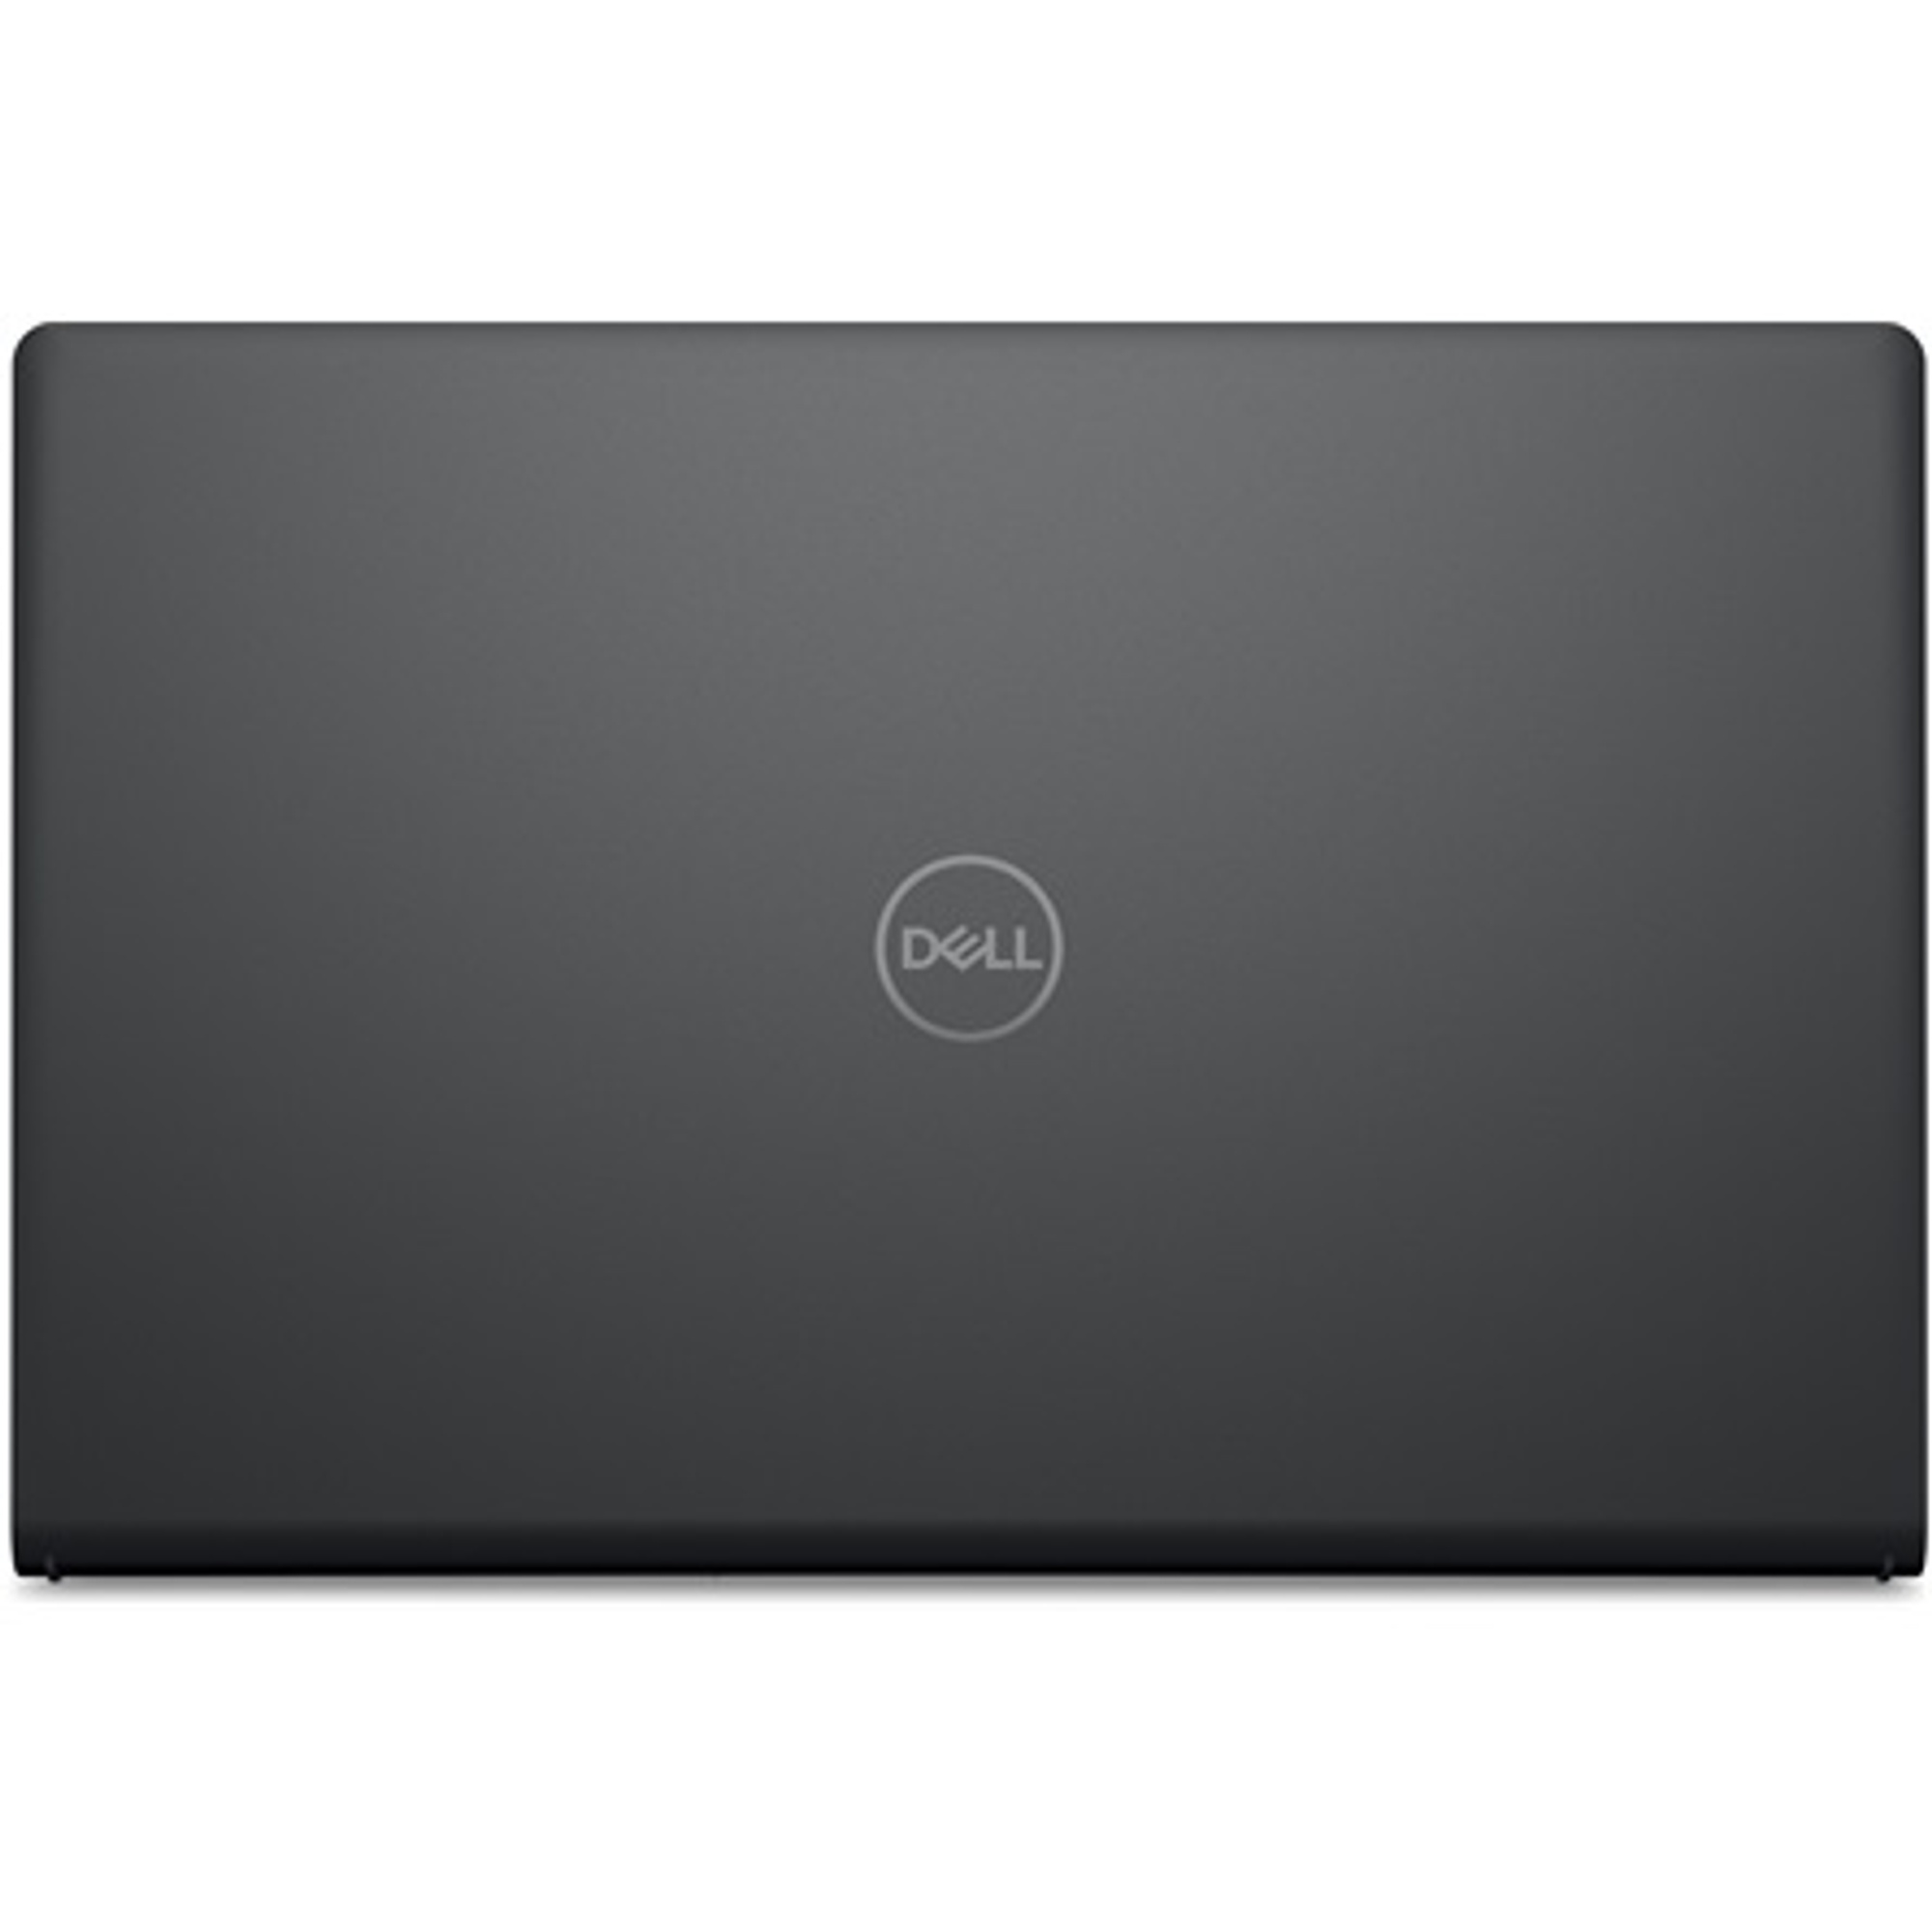 DELL V3510-38 Laptop / Notebook 5